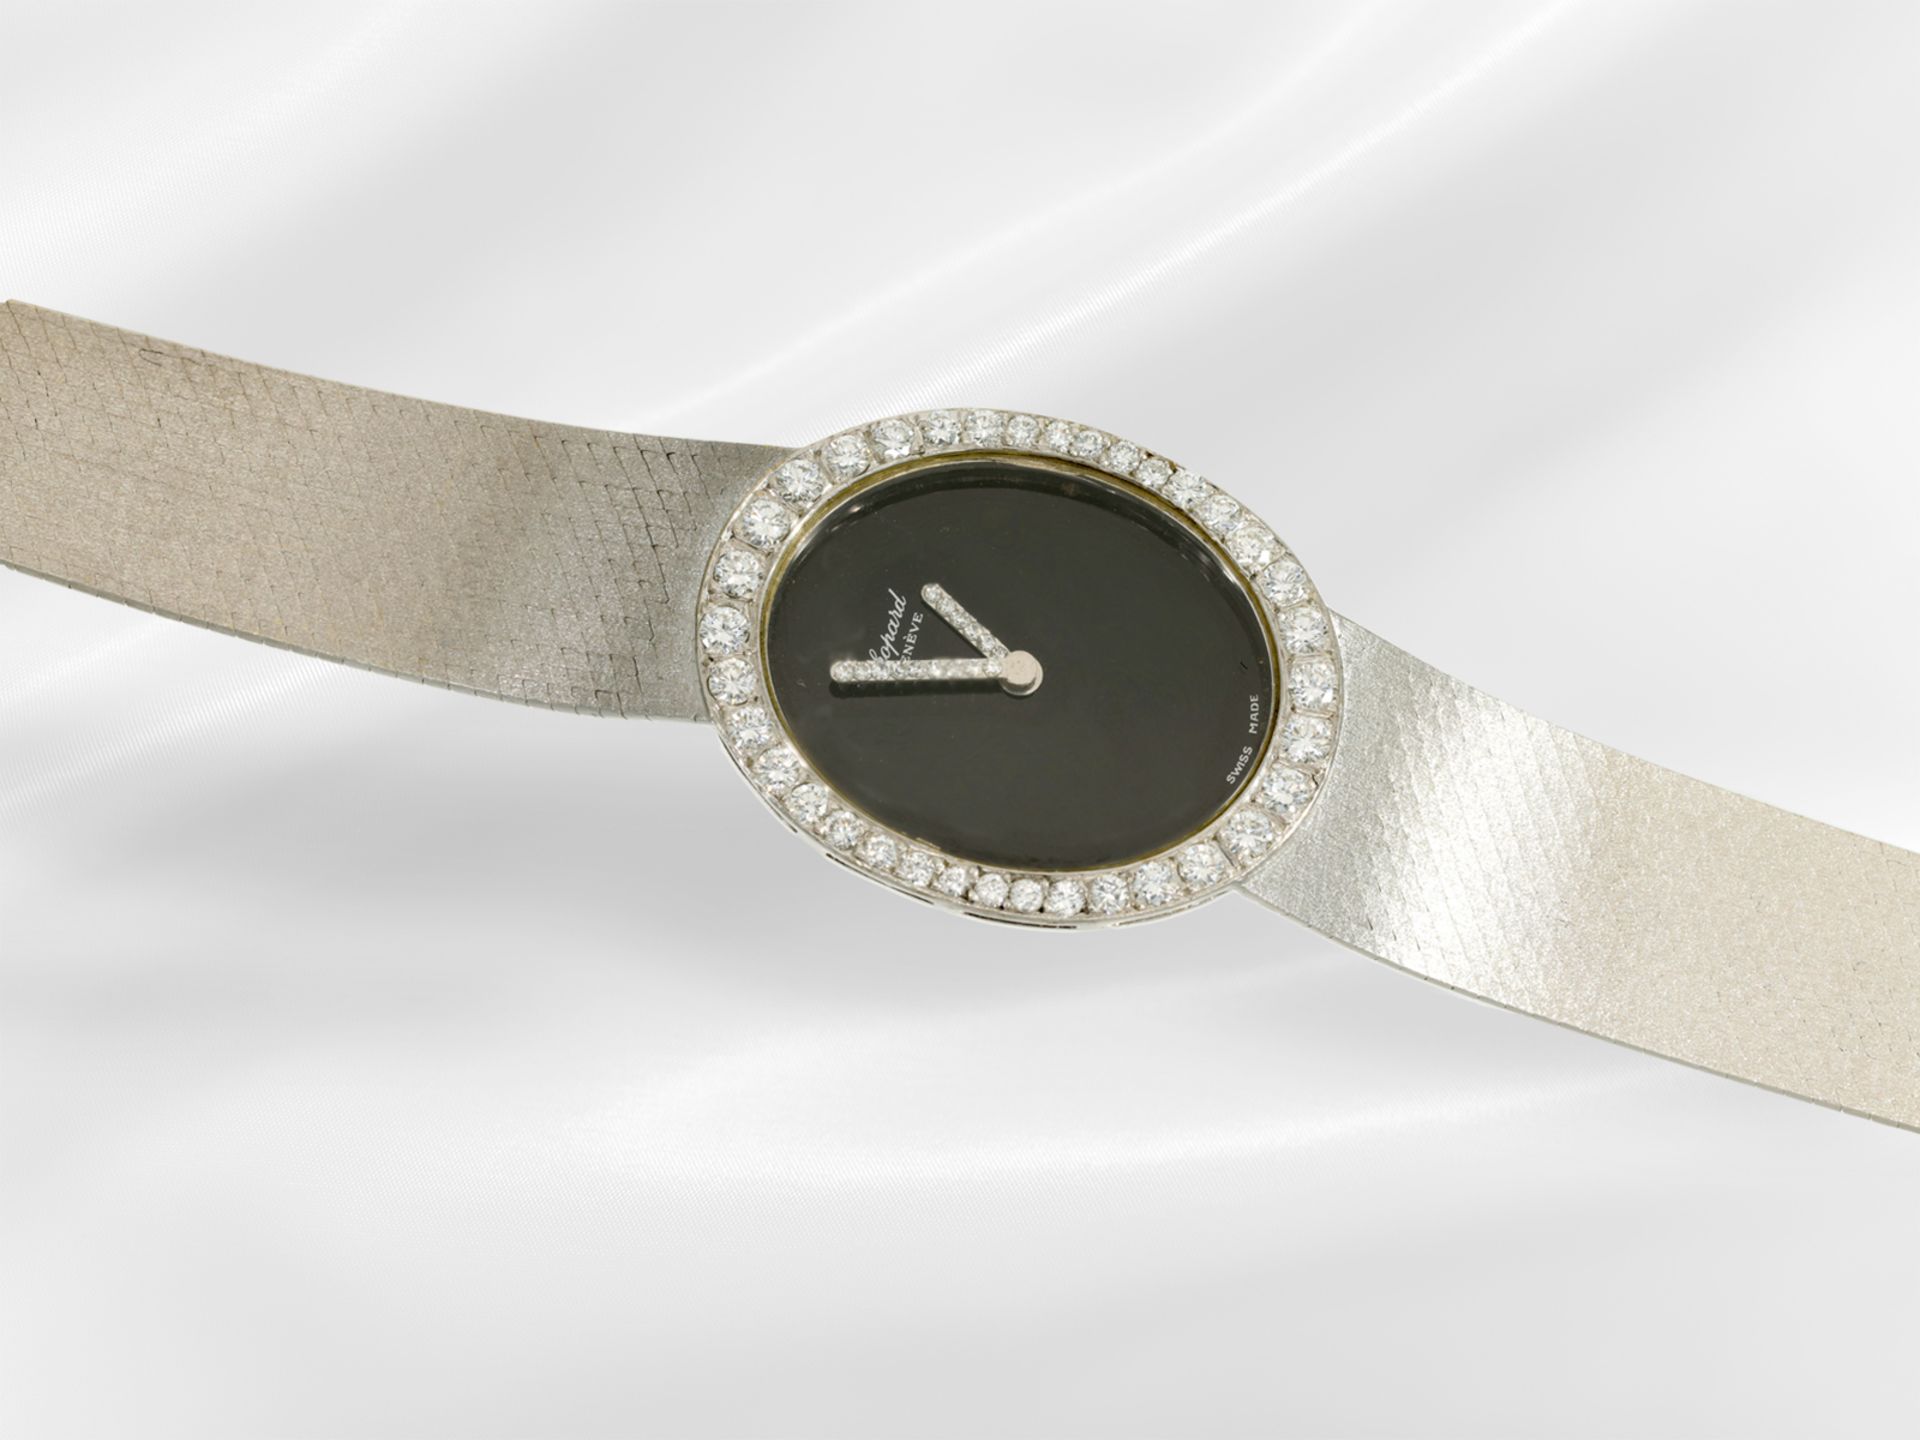 Armbanduhr: wertvolle vintage Chopard Damenuhr mit Brillantbesatz von ca. 1,1ct, 18K Weißgold - Bild 3 aus 4